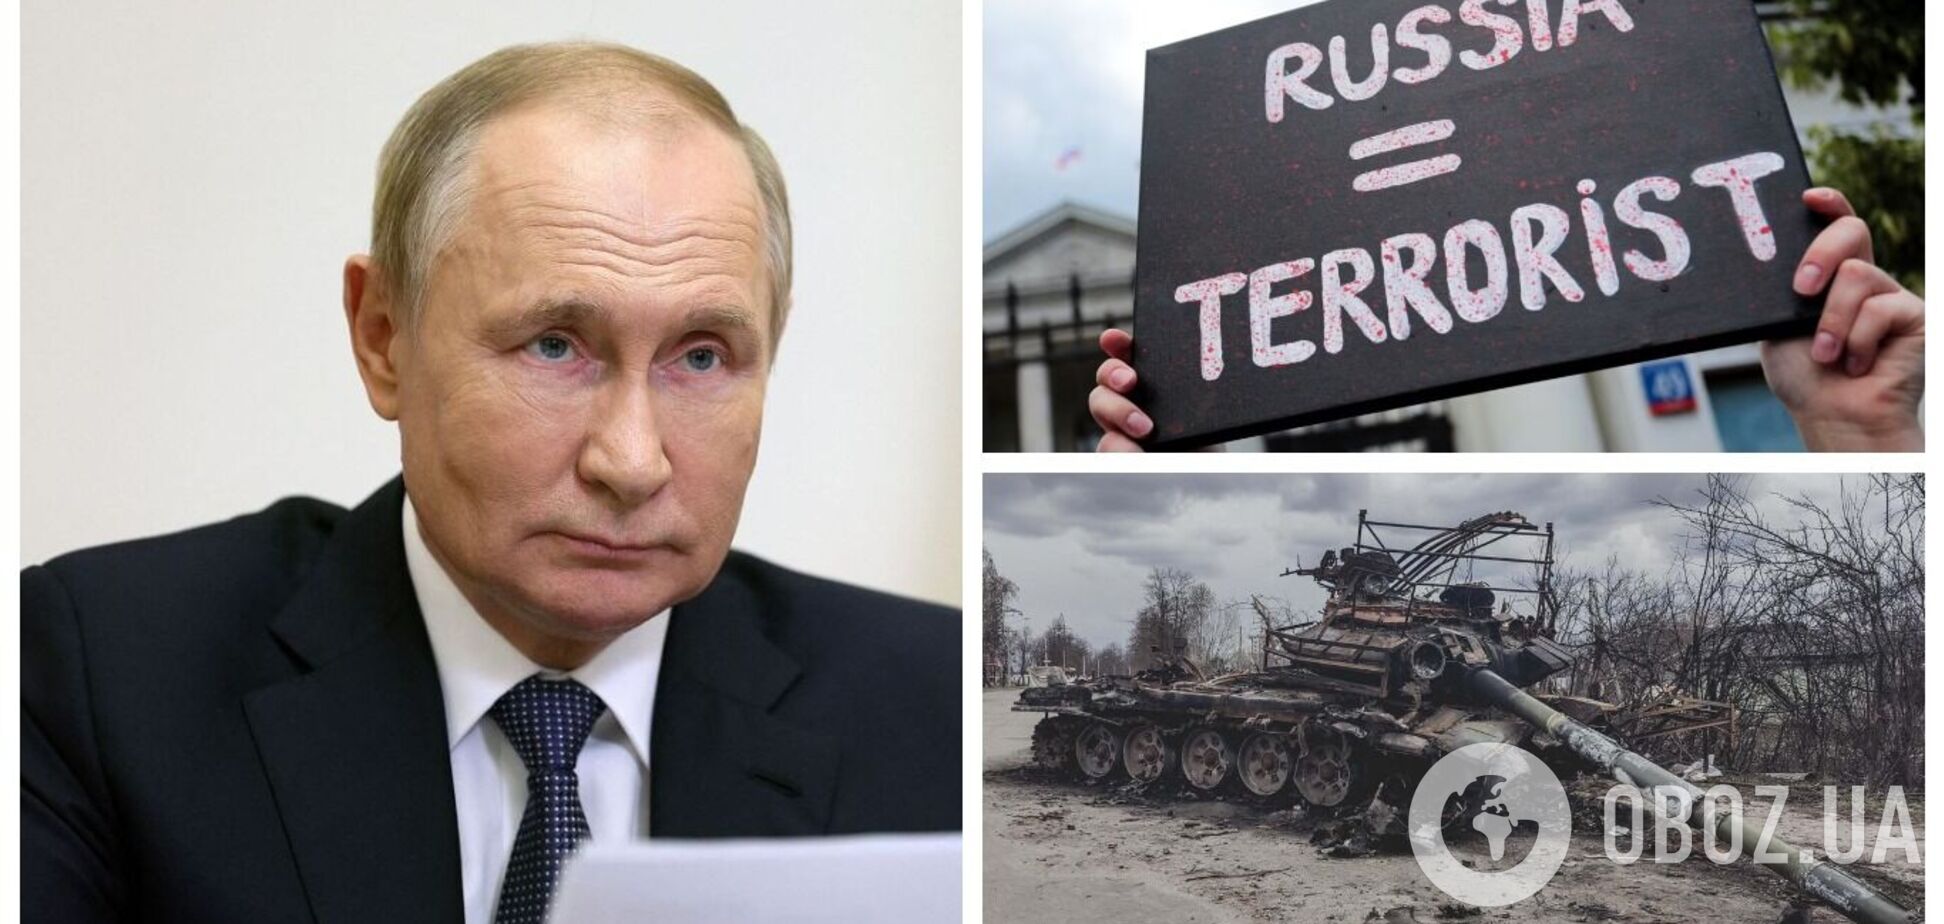 Путин хотел объявить вторжение в Украину личной геополитической победой, но 'промахнулся': в ISW указали на 'расшатывание' в РФ